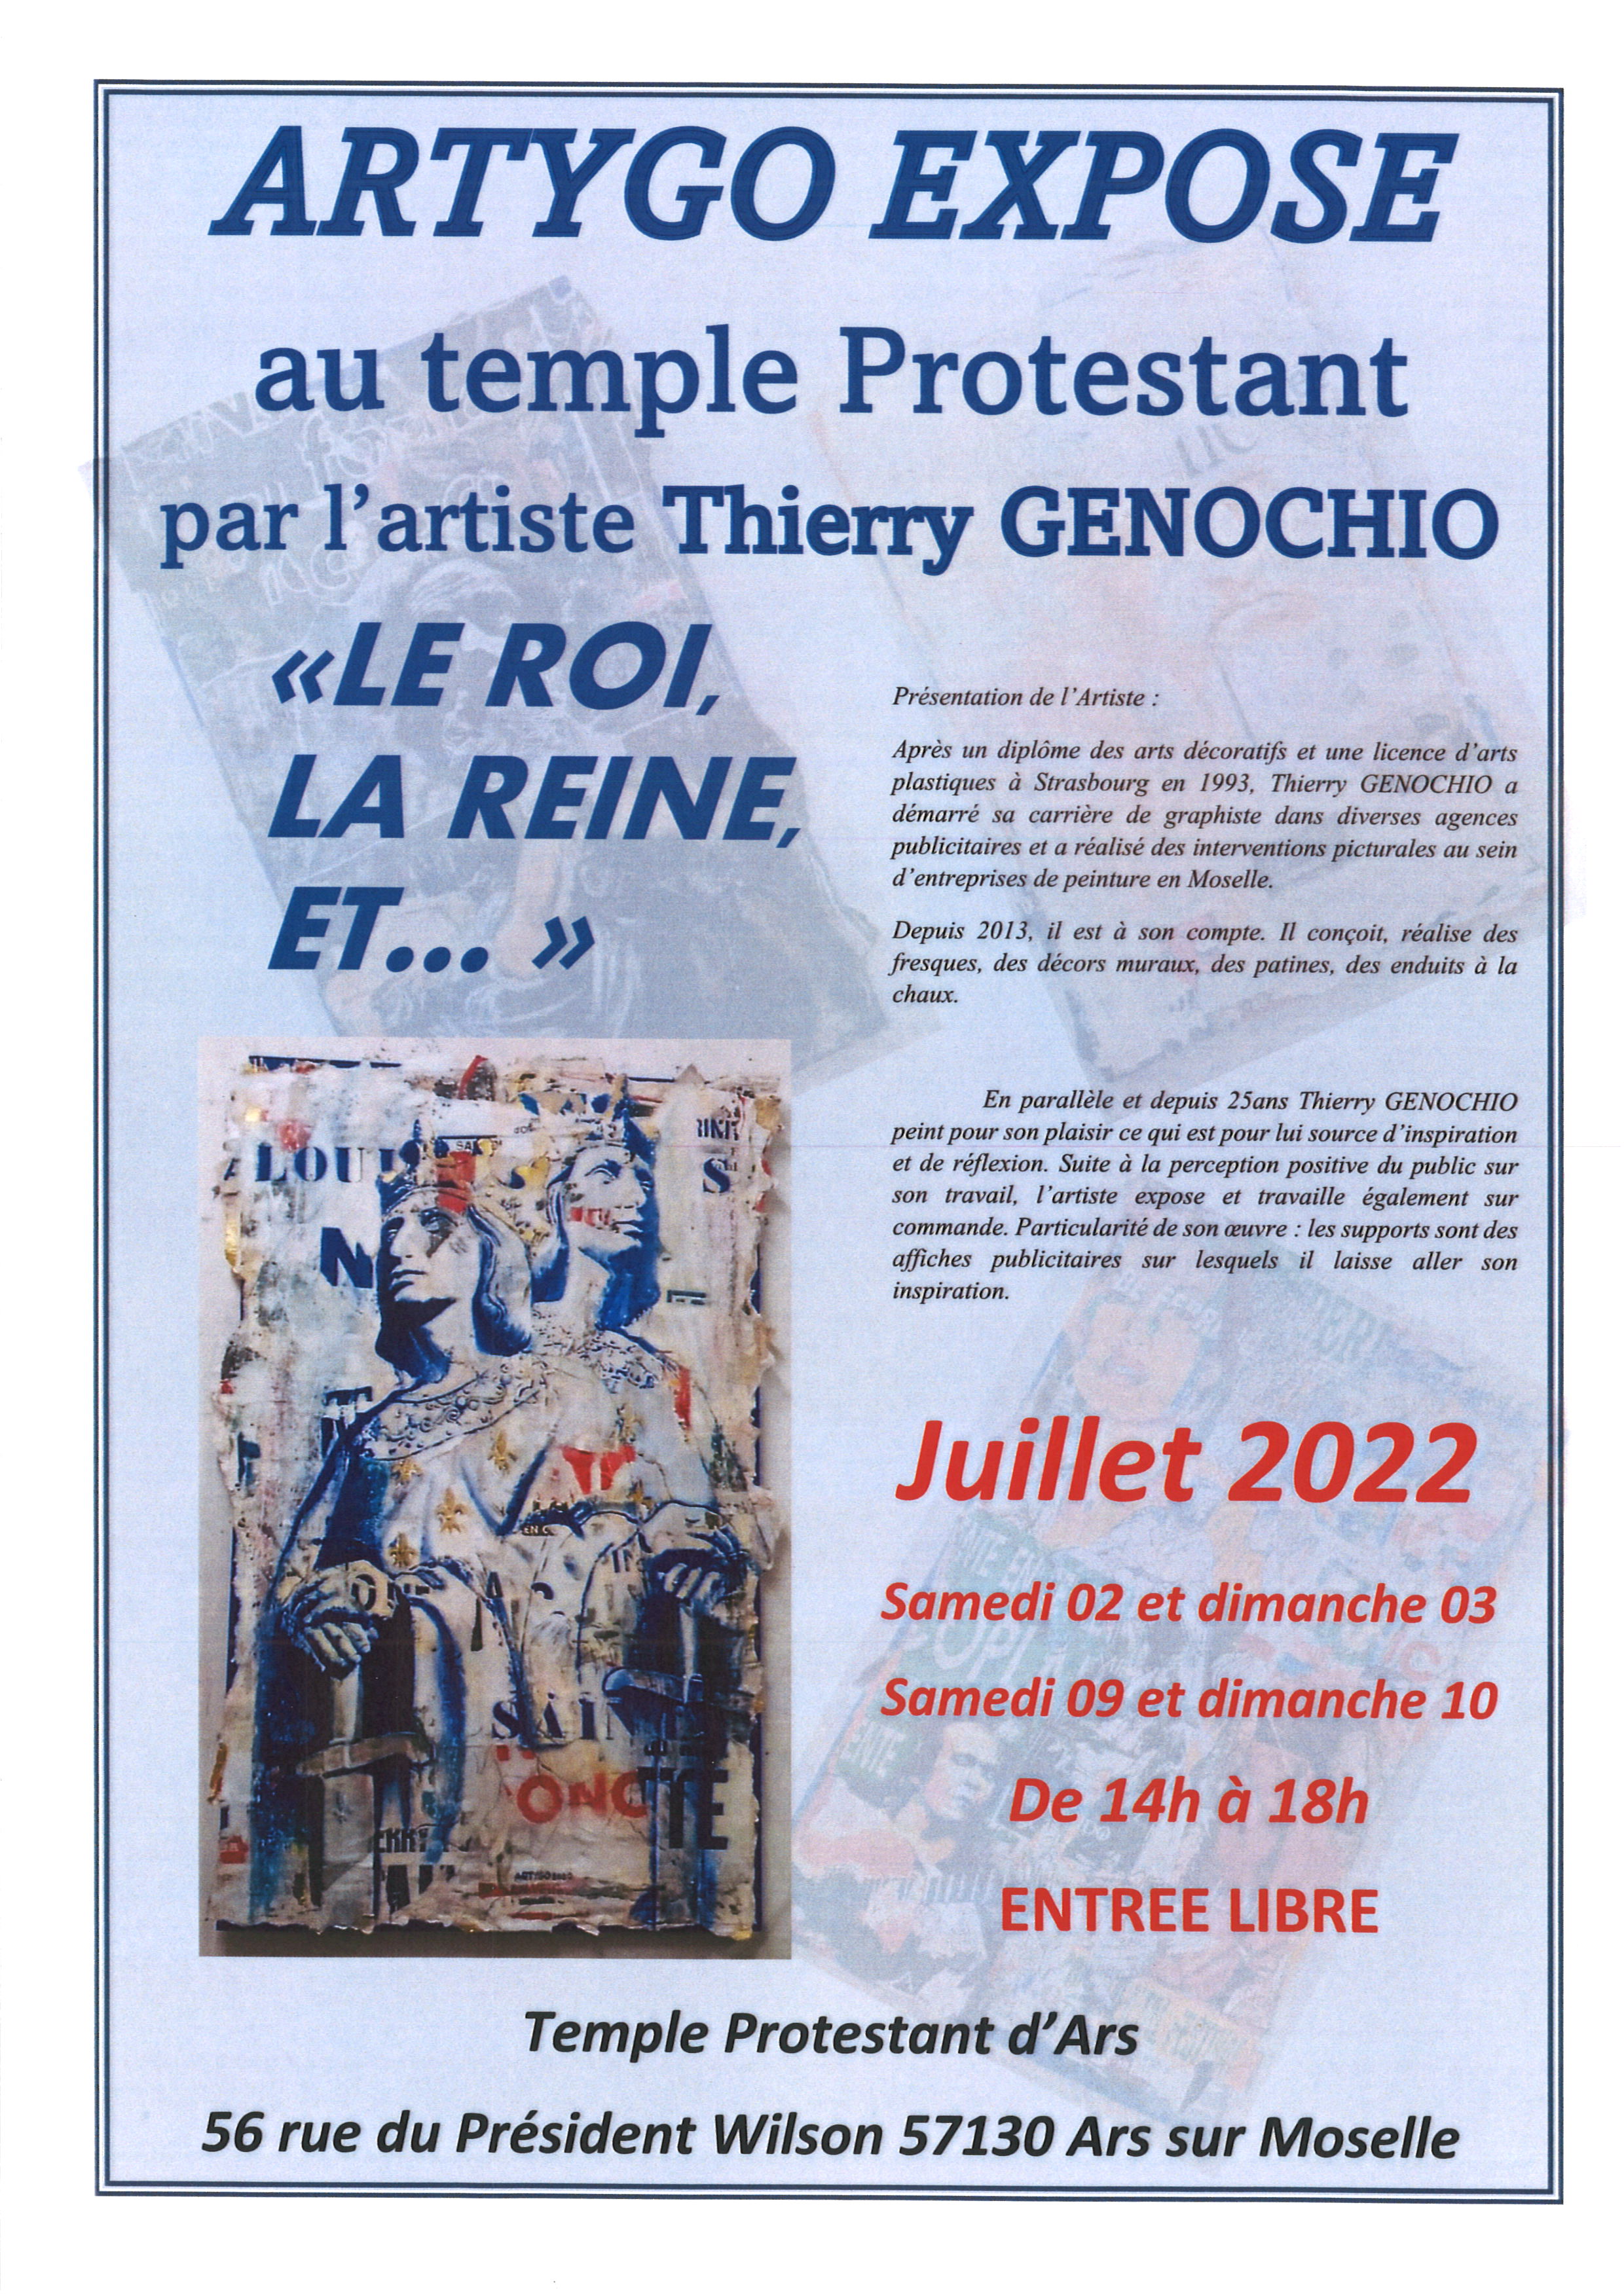 ARTYGO expose au temple protestant samedis 02 et 09 dimanche 03 et 10 juillet